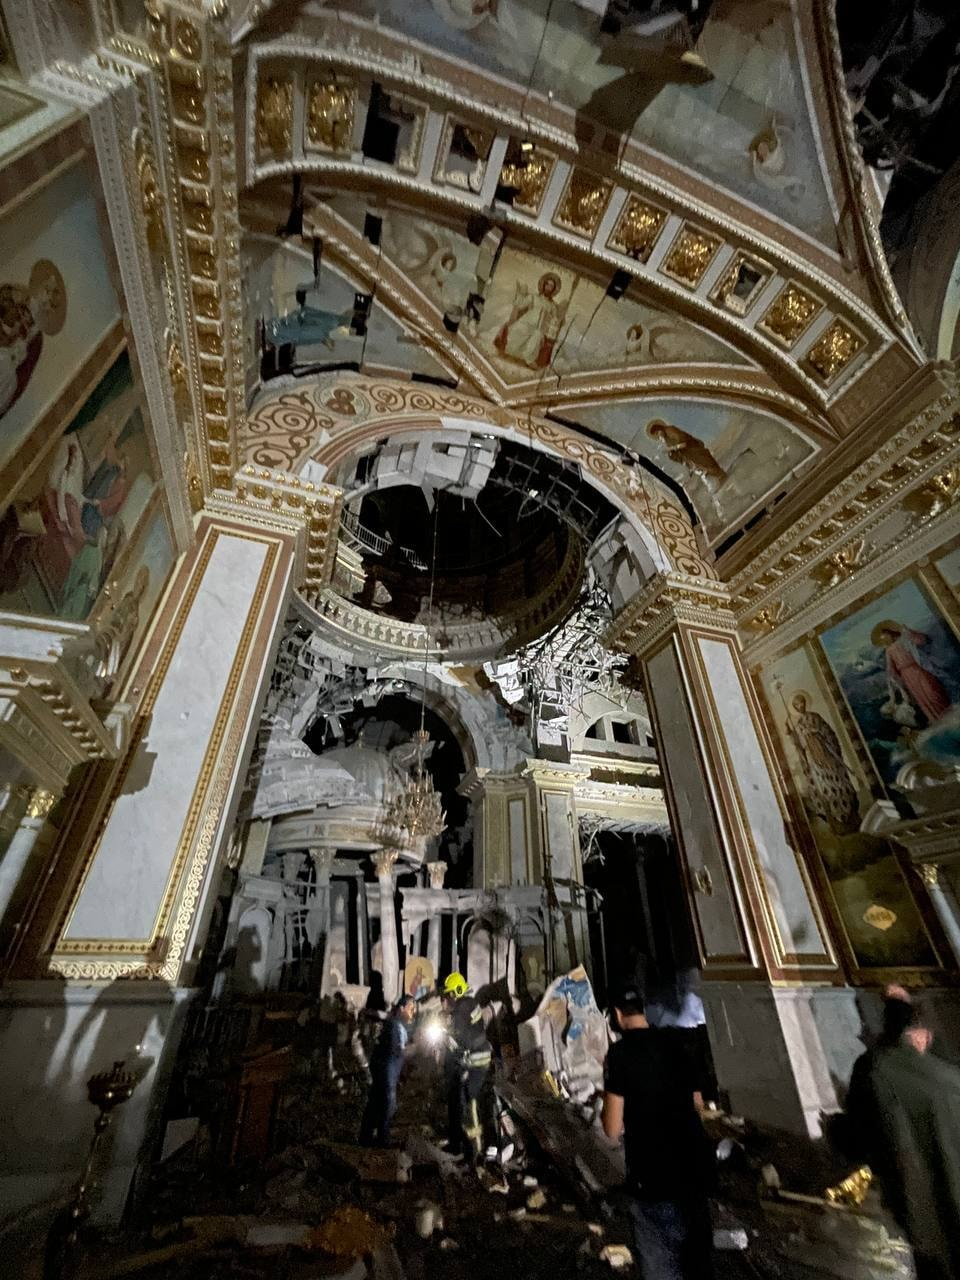 Російська ракета потрапила прямо у центральний вівтар - зруйновано Спасо-Преображенський кафедральний собор в Одесі